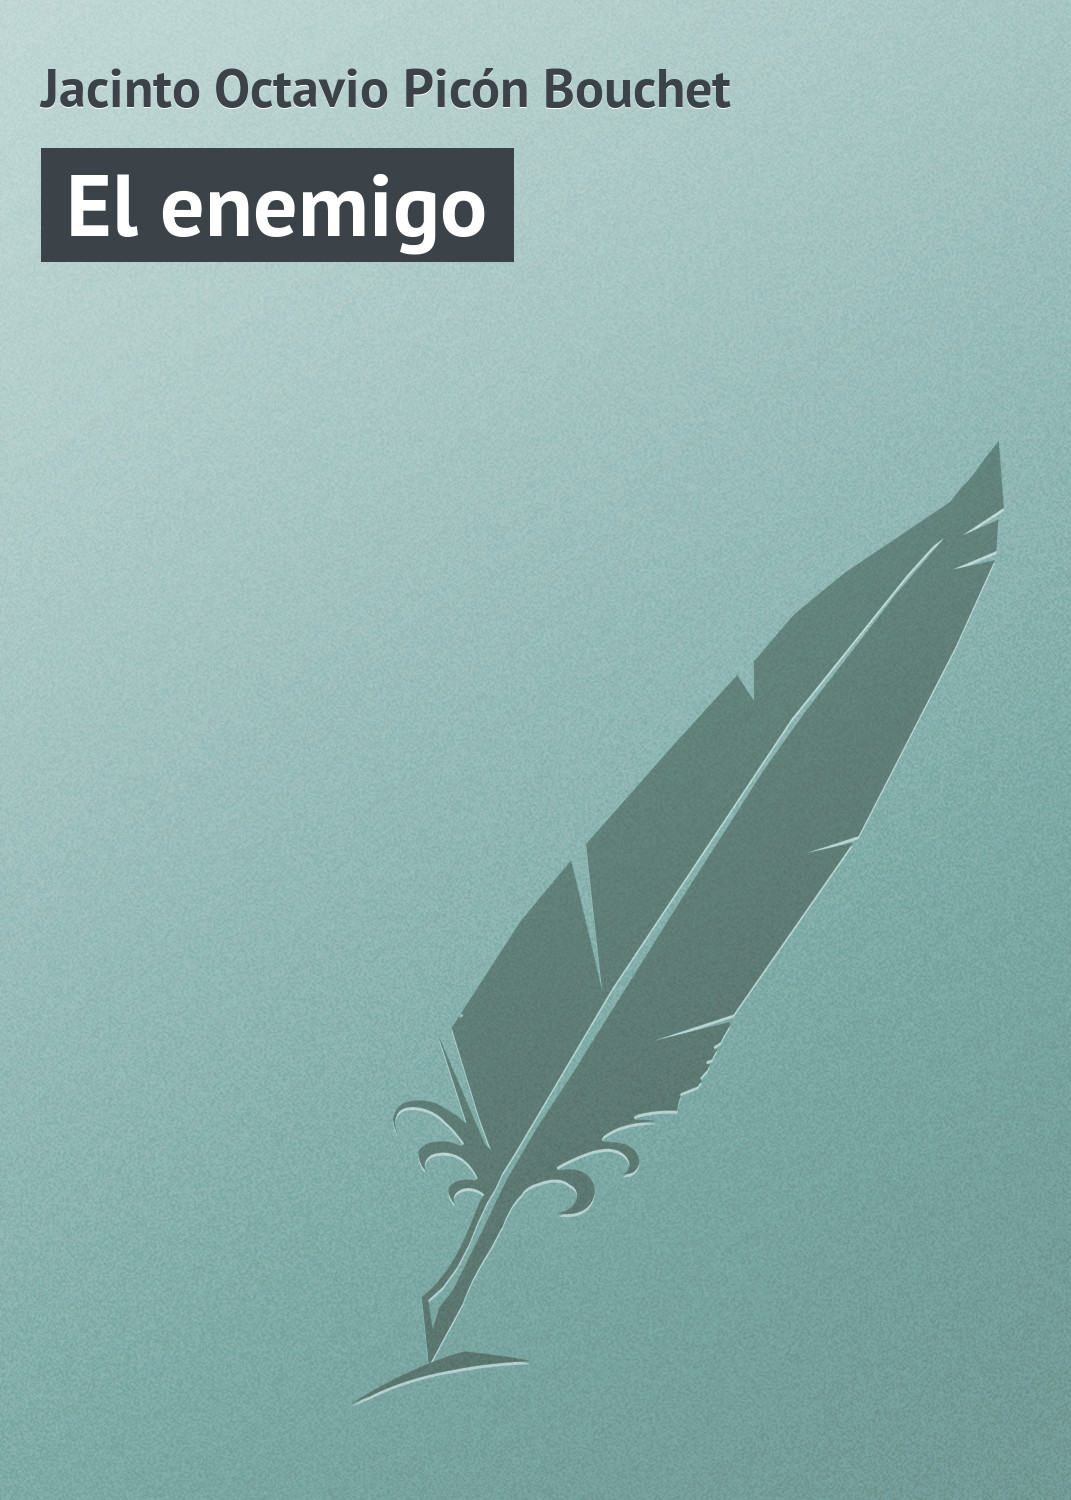 Книга El enemigo из серии , созданная Jacinto Octavio, может относится к жанру Зарубежная старинная литература, Зарубежная классика. Стоимость электронной книги El enemigo с идентификатором 21107678 составляет 5.99 руб.